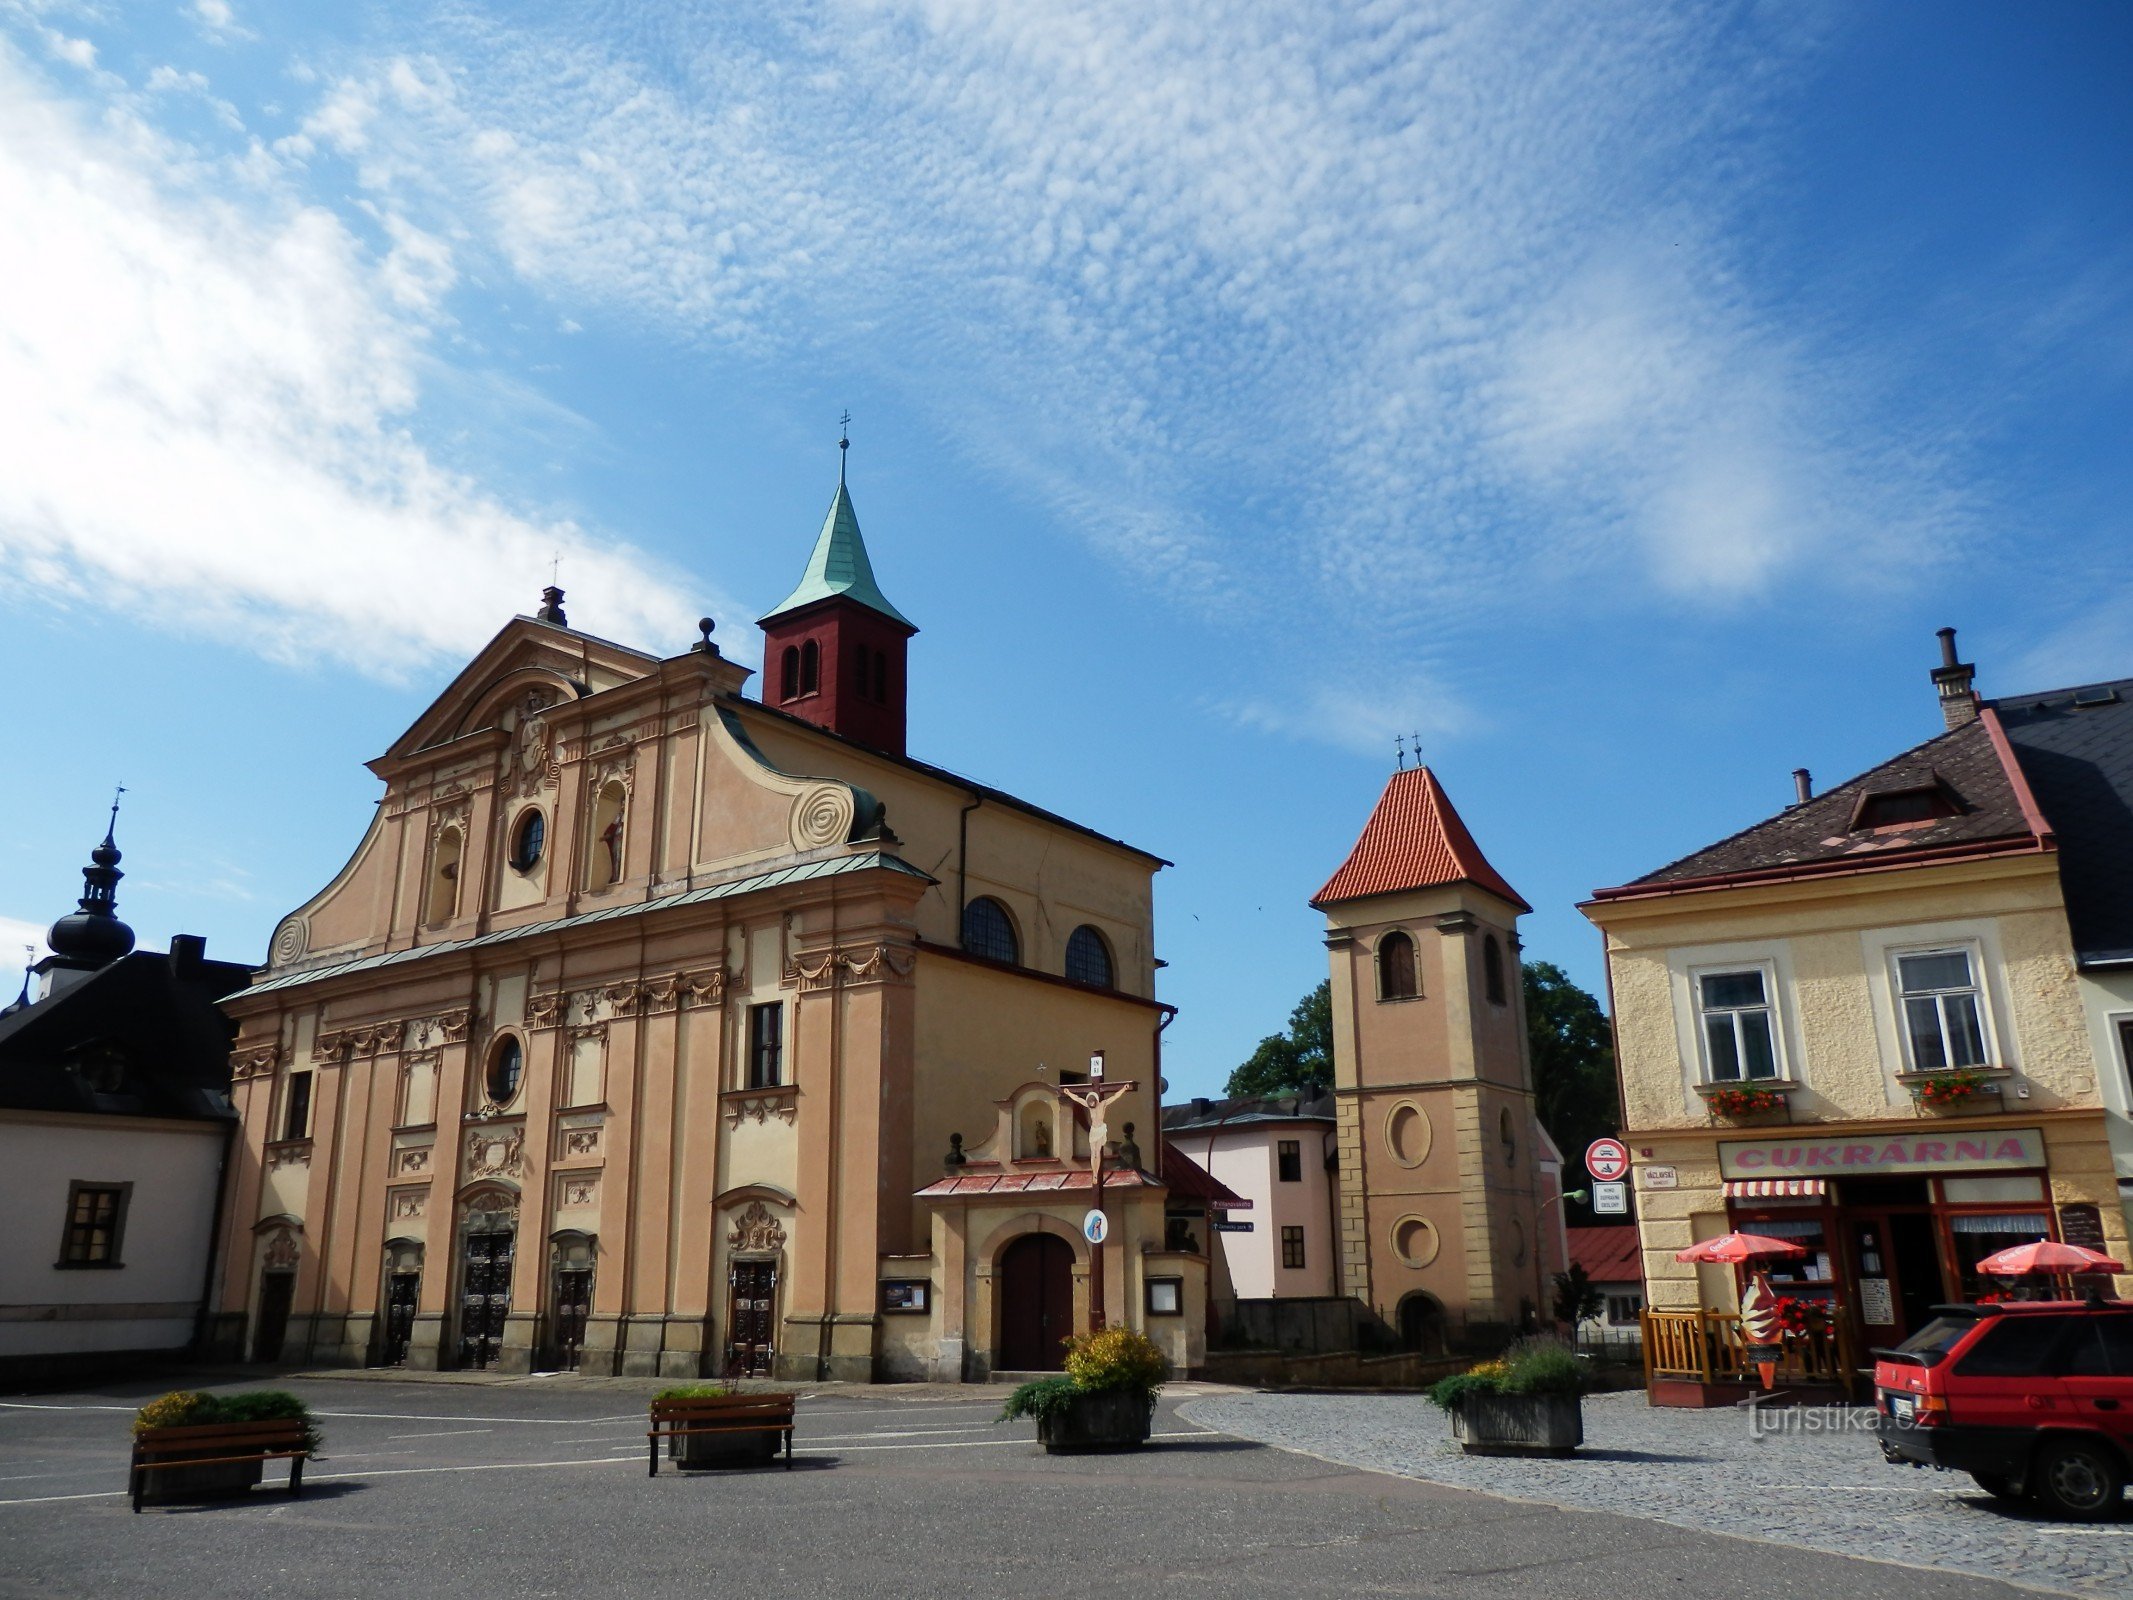 Från Letohrad till Ústí nad Orlicí igen annorlunda